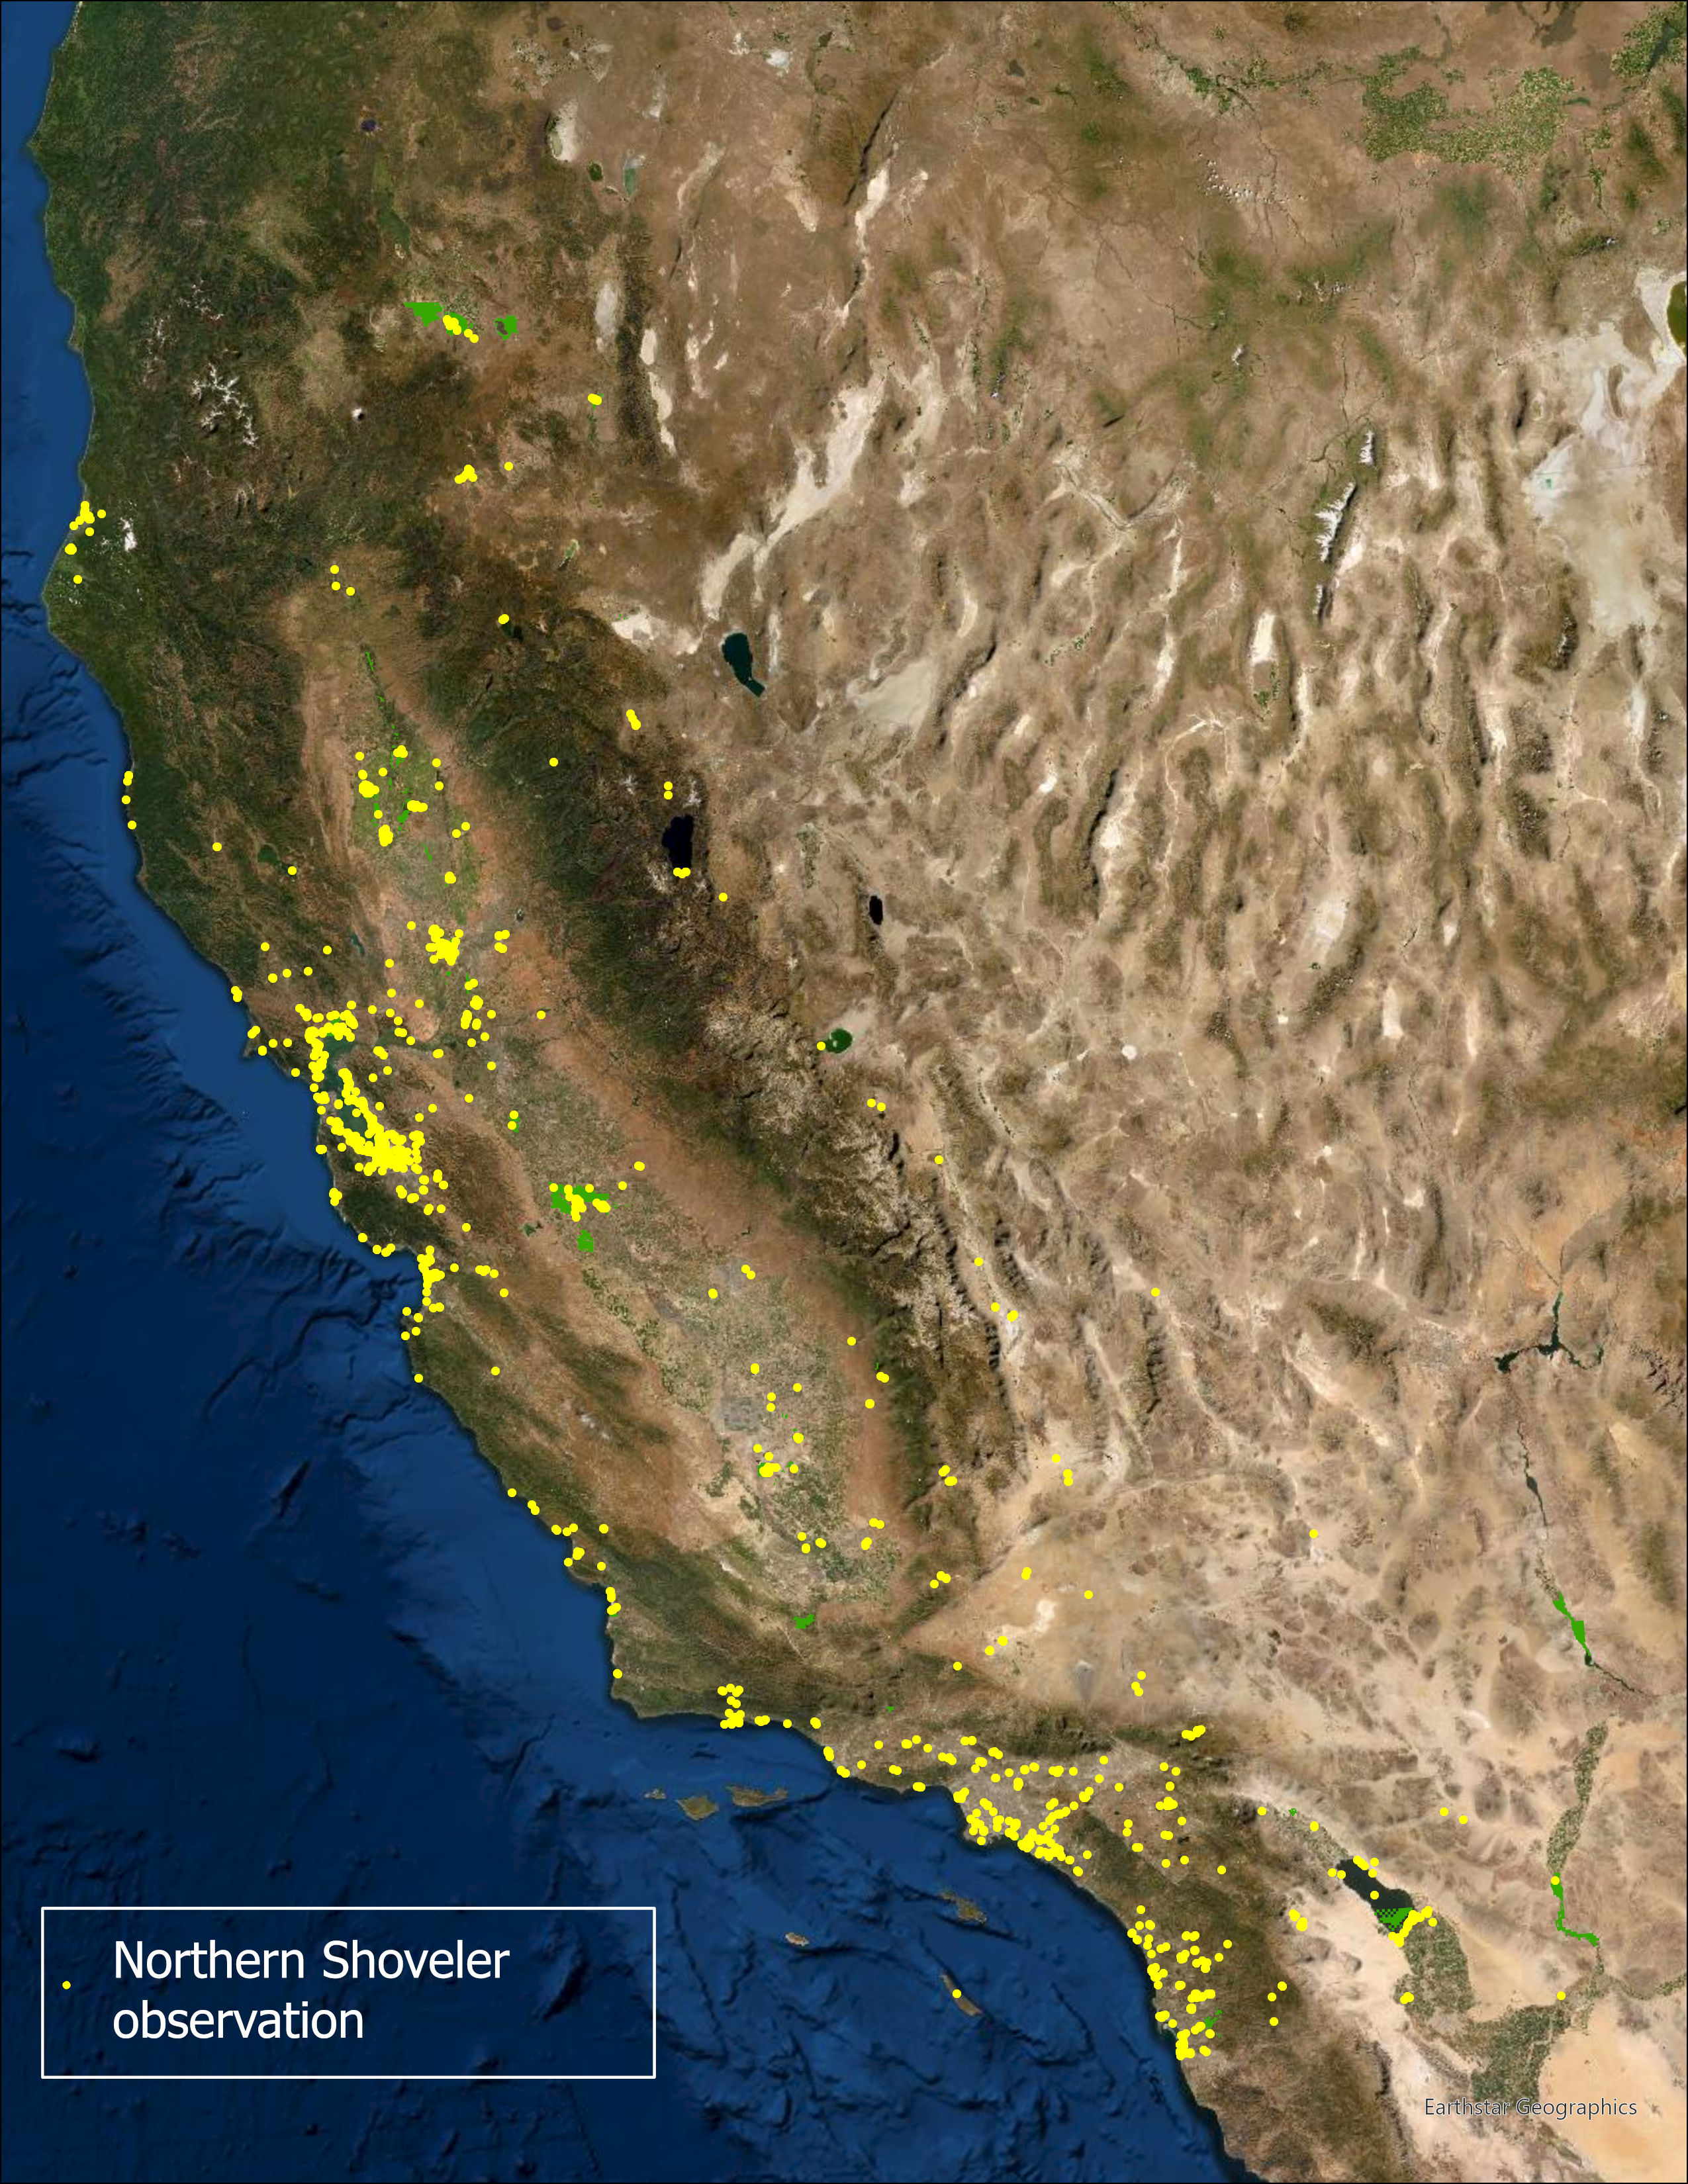 Shoveler observations in California